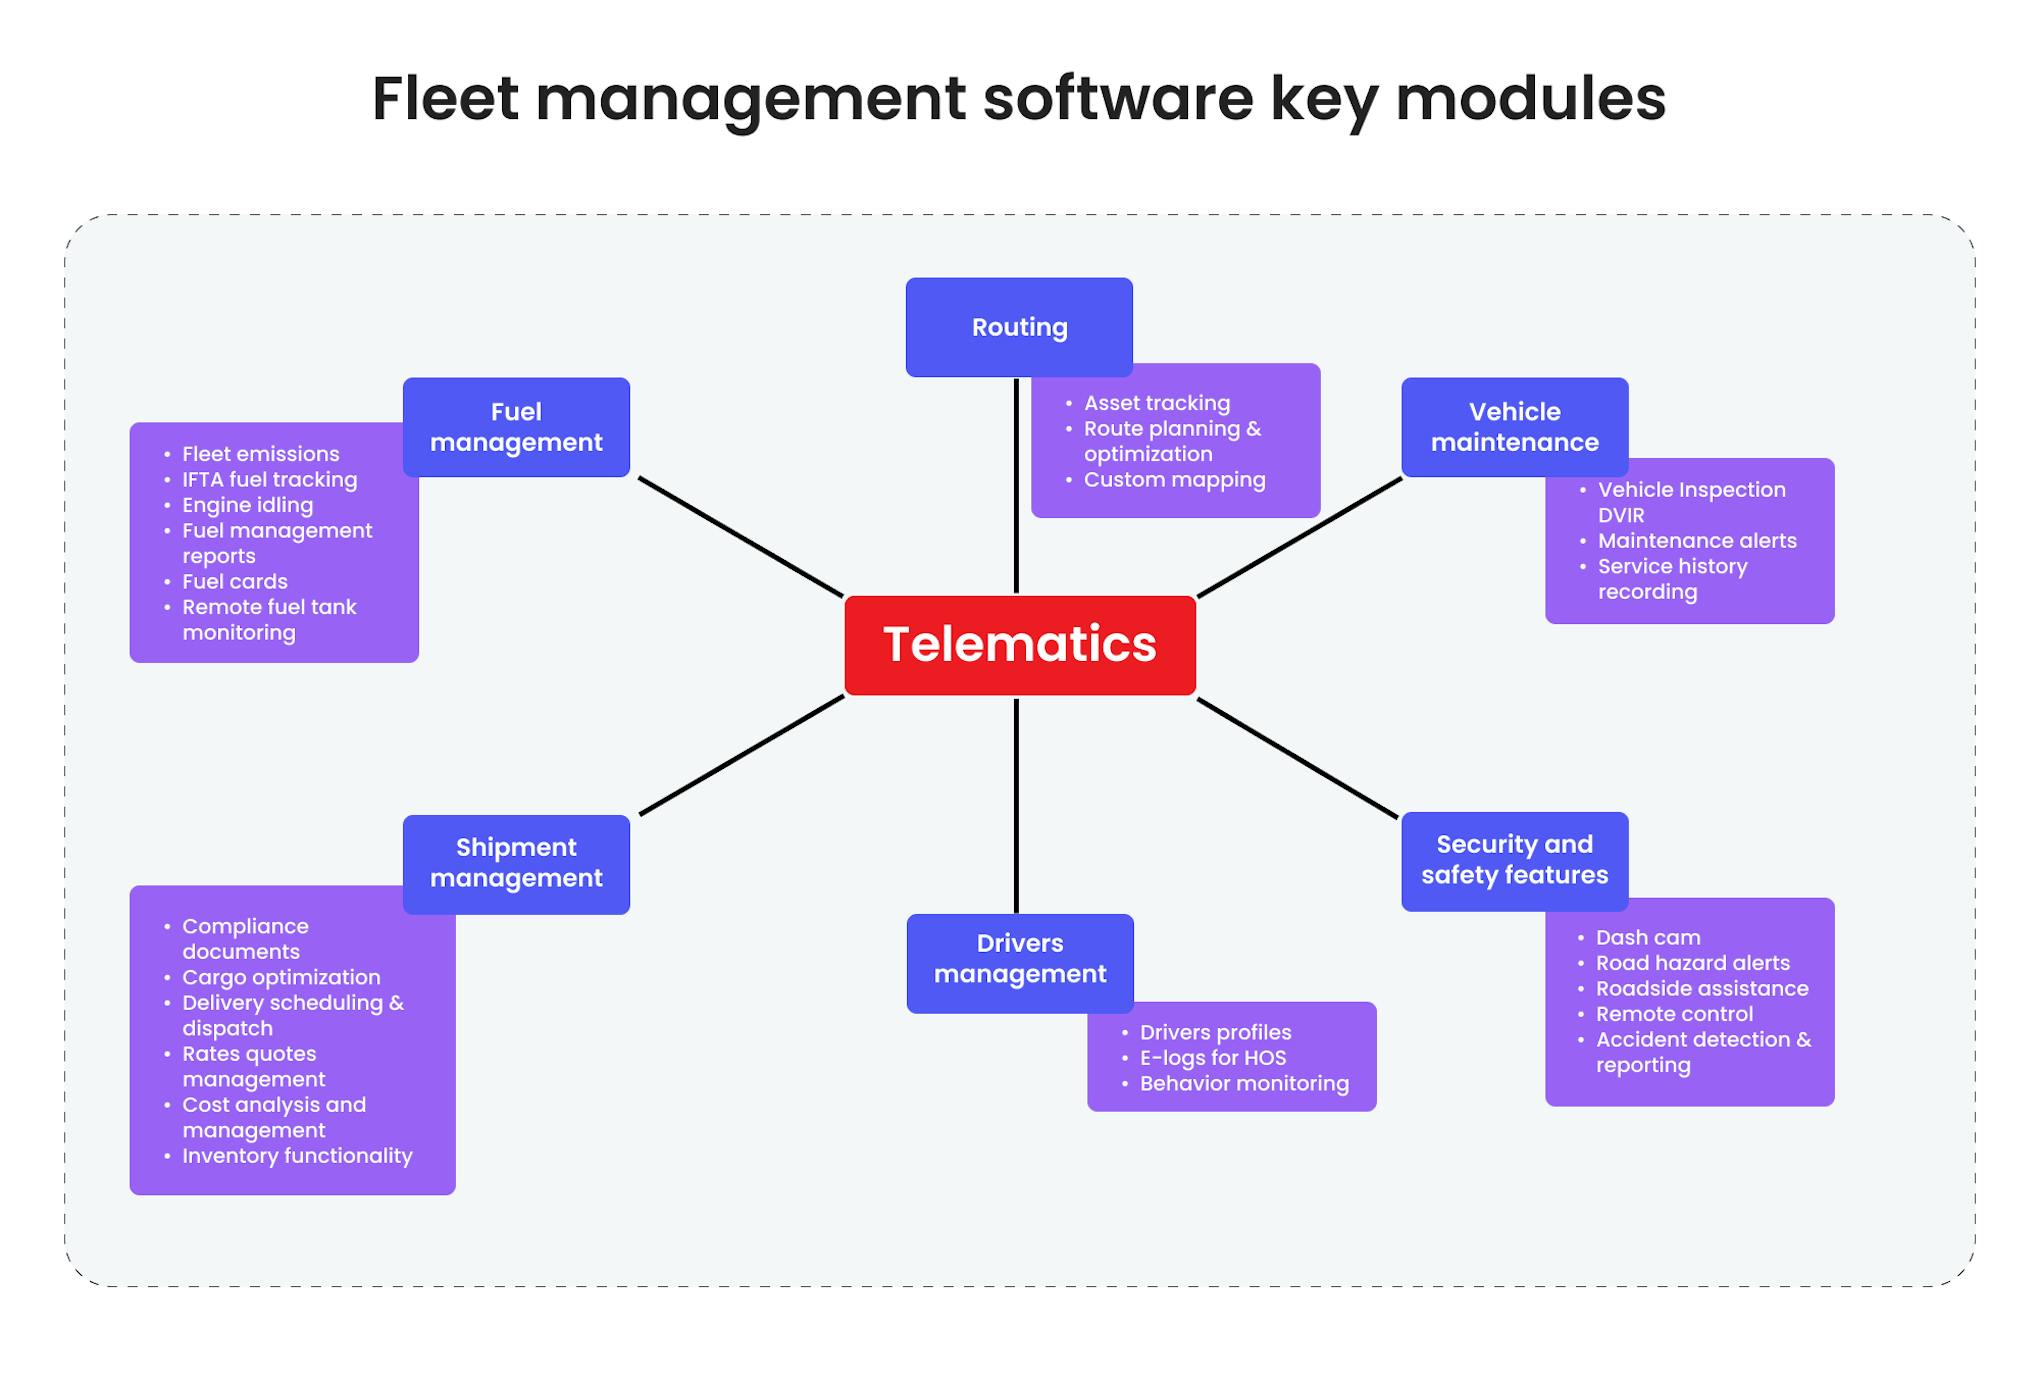 Fleet management software key modules